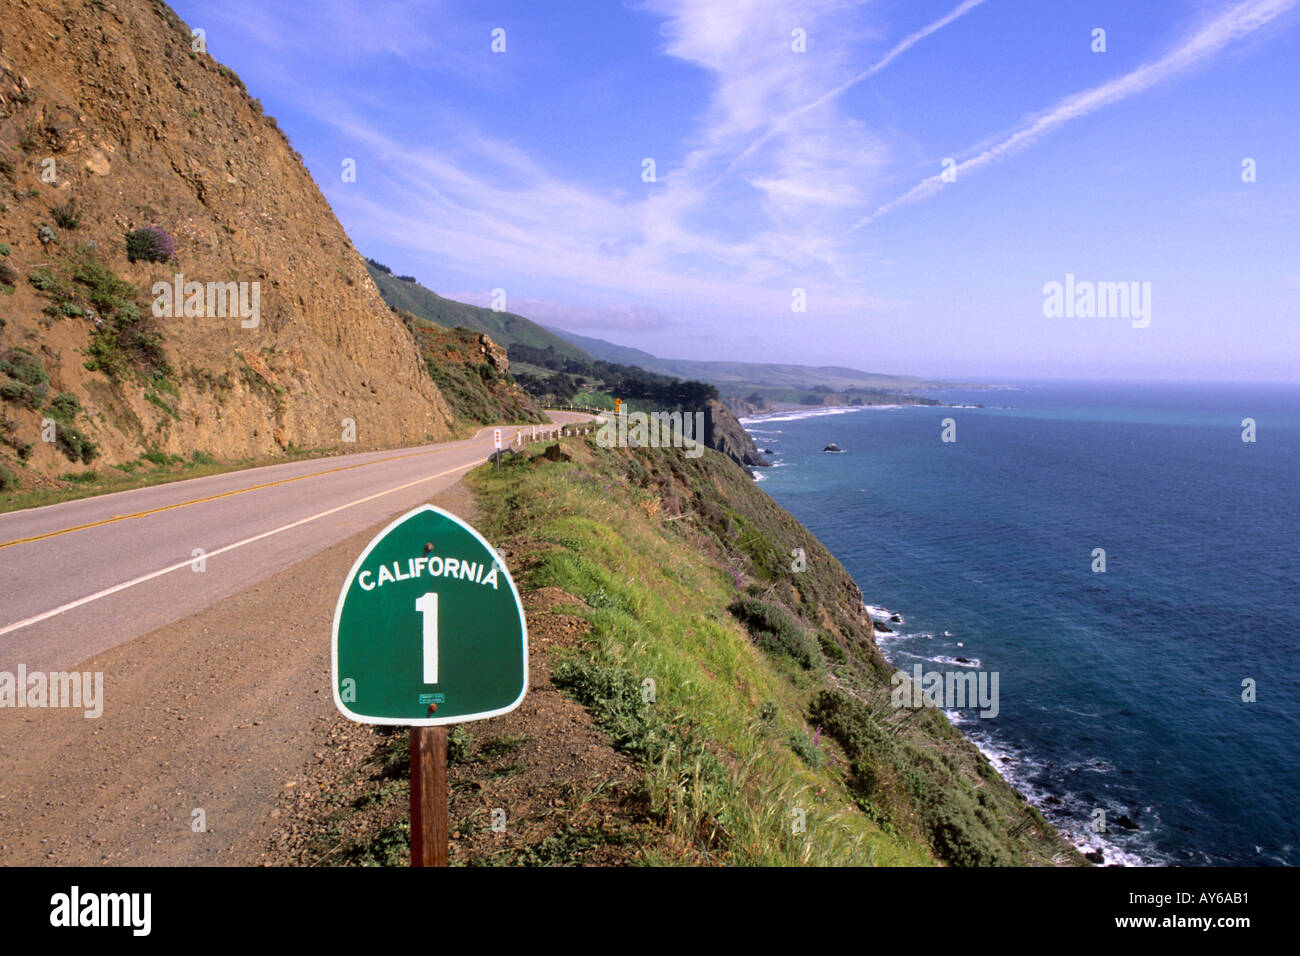 Pacific Coast Highway California Route 1 Scenic near Big Sur California  Stock Photo - Alamy